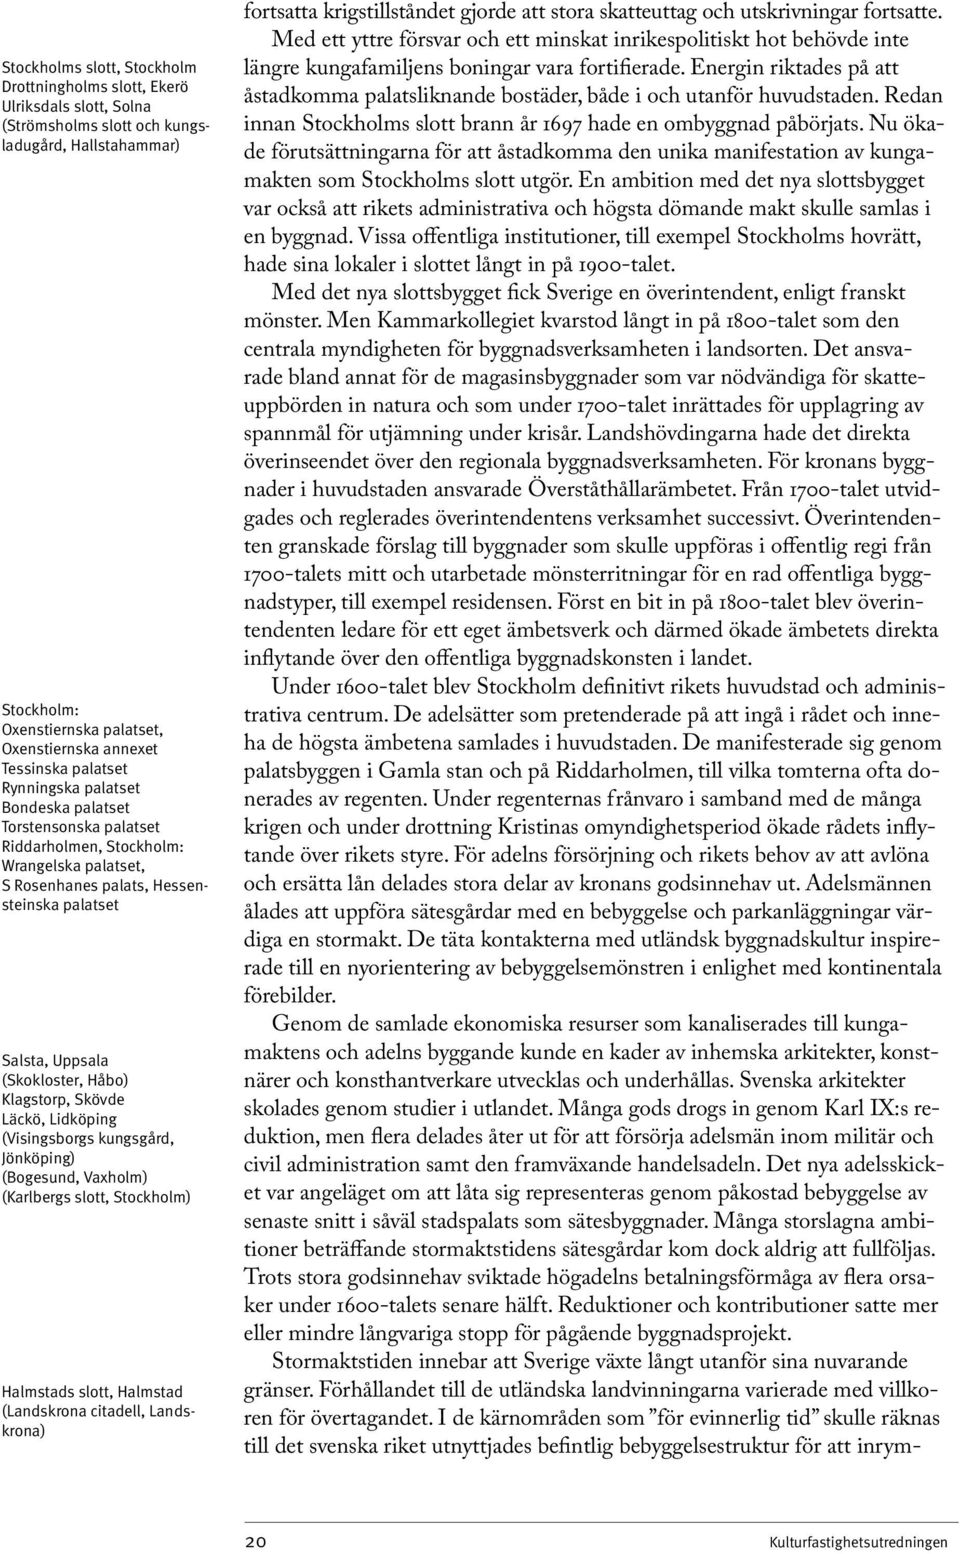 Kulturfastighetsutredningen. Del 2 Berättelser. Dnr /08 - PDF ...